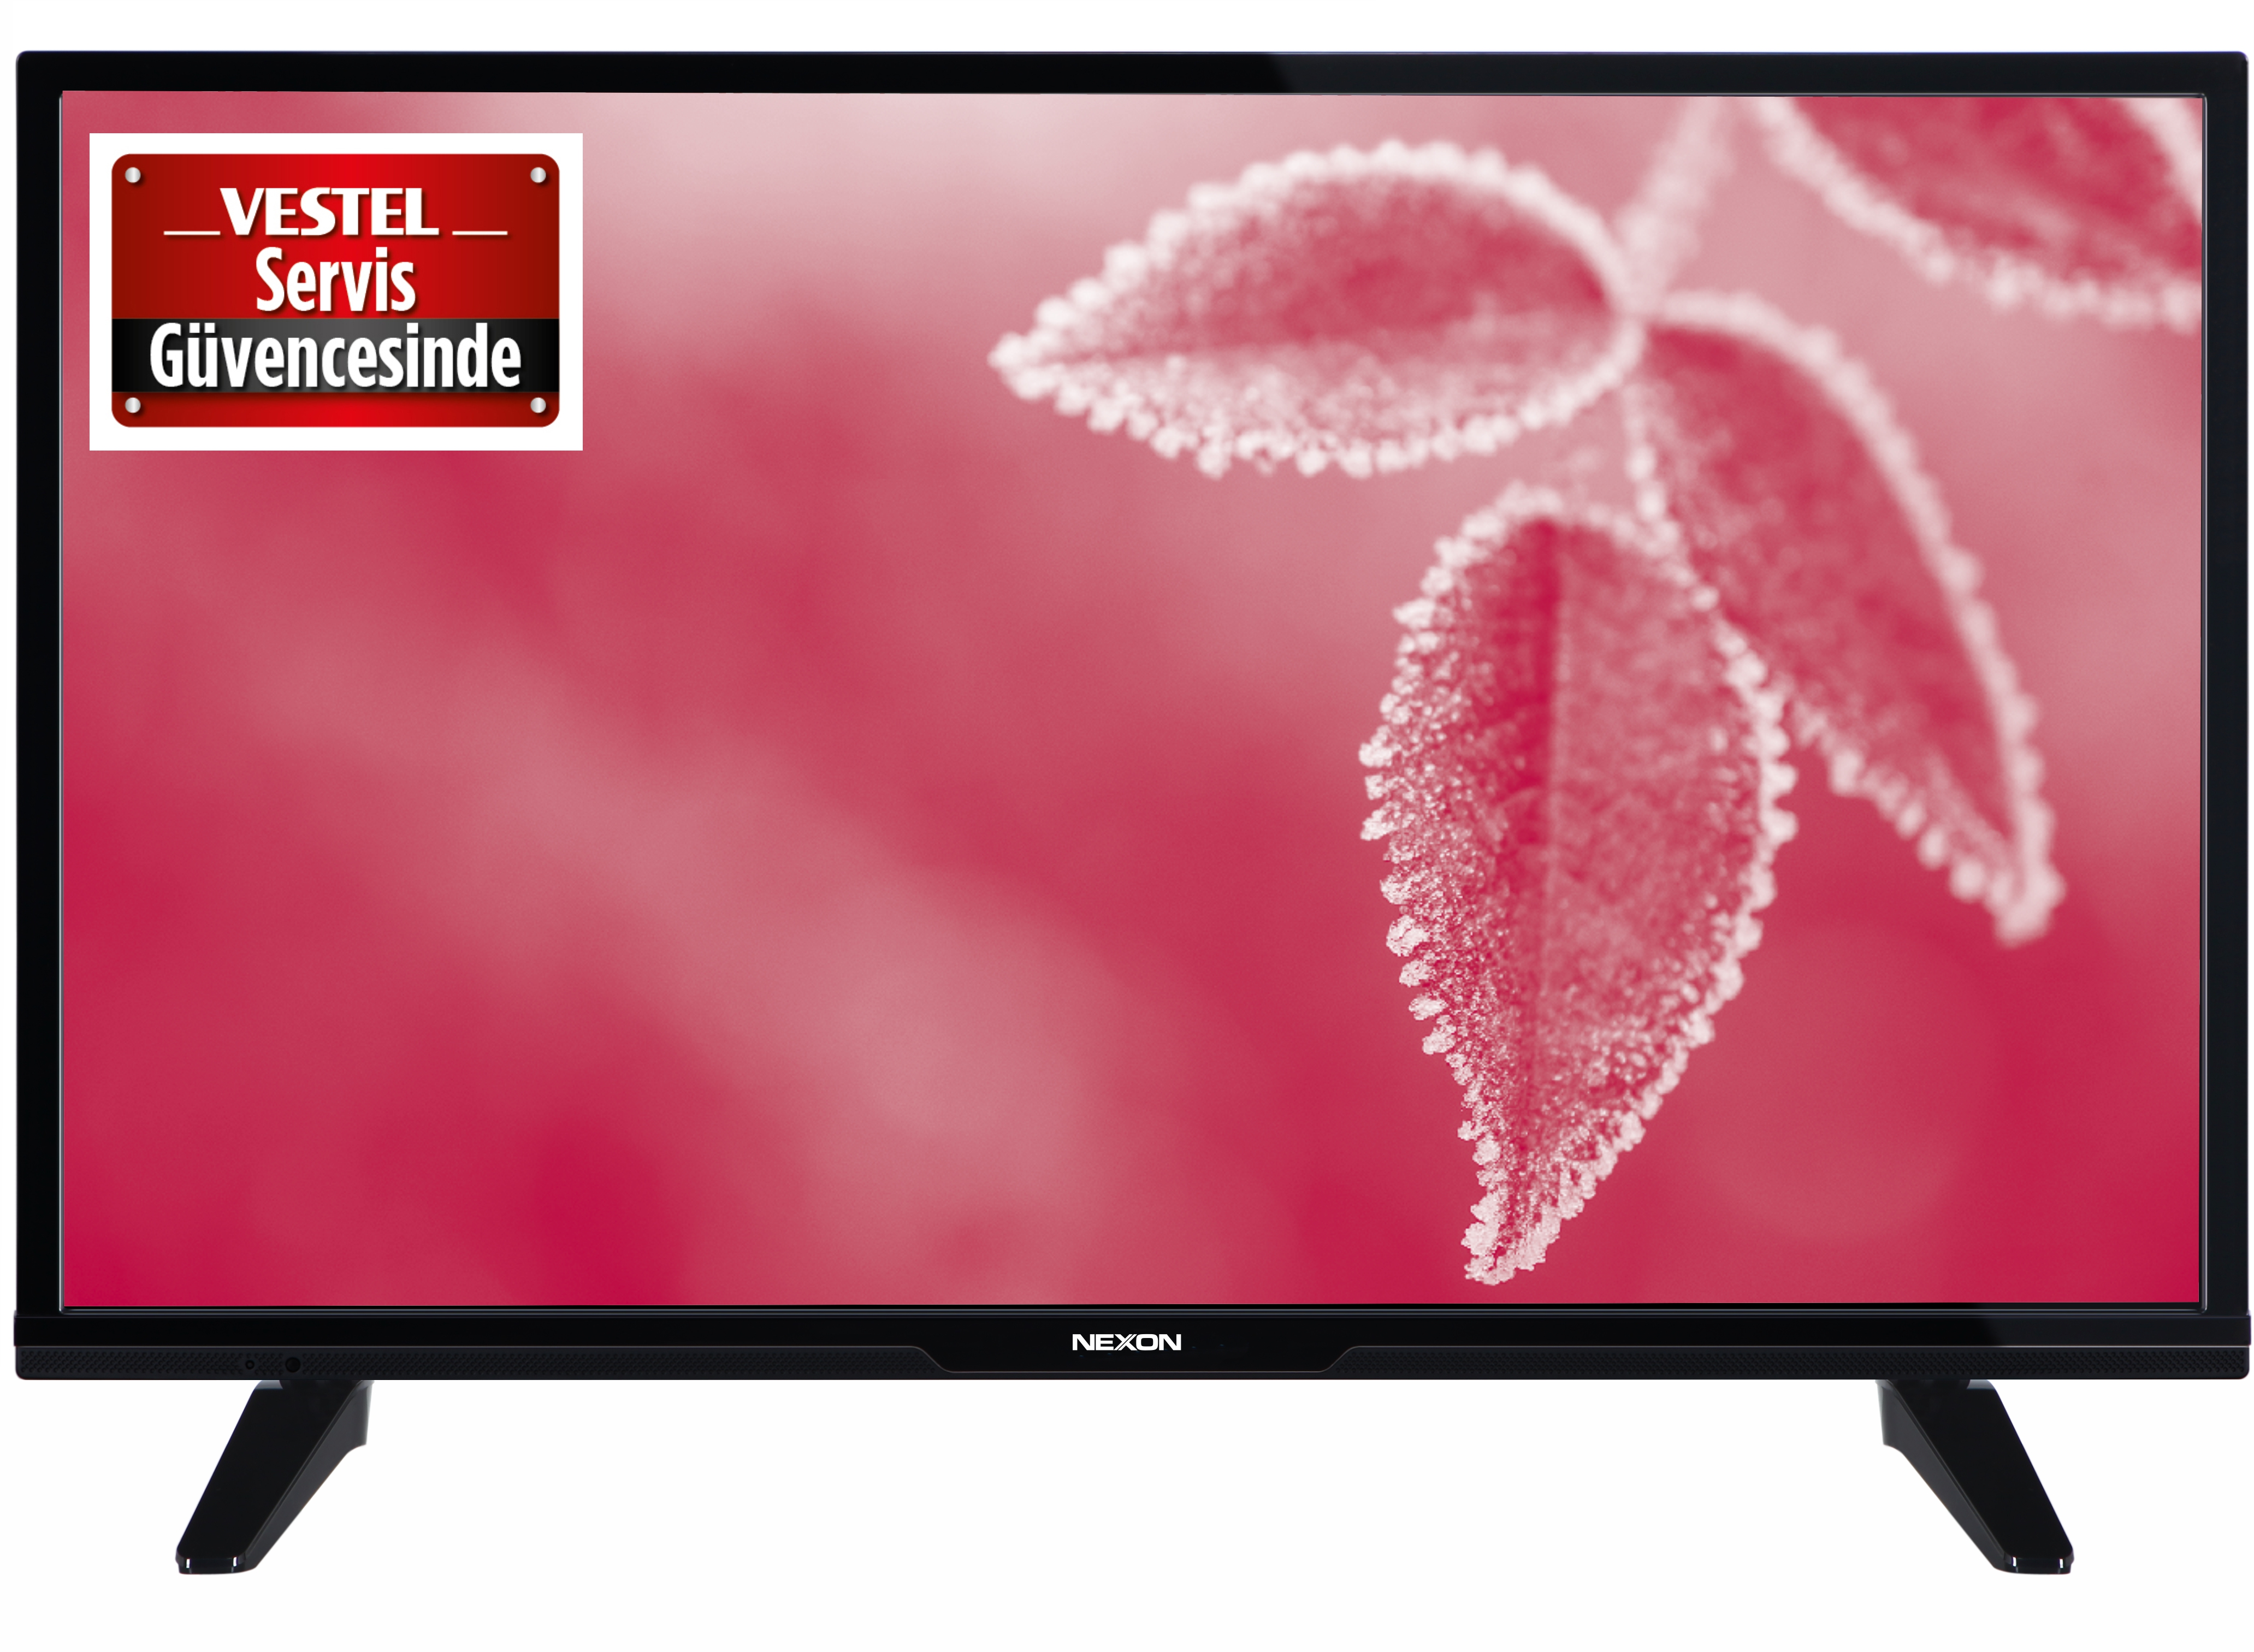 Nexon 49NX700 49" Full HD Smart LED TV